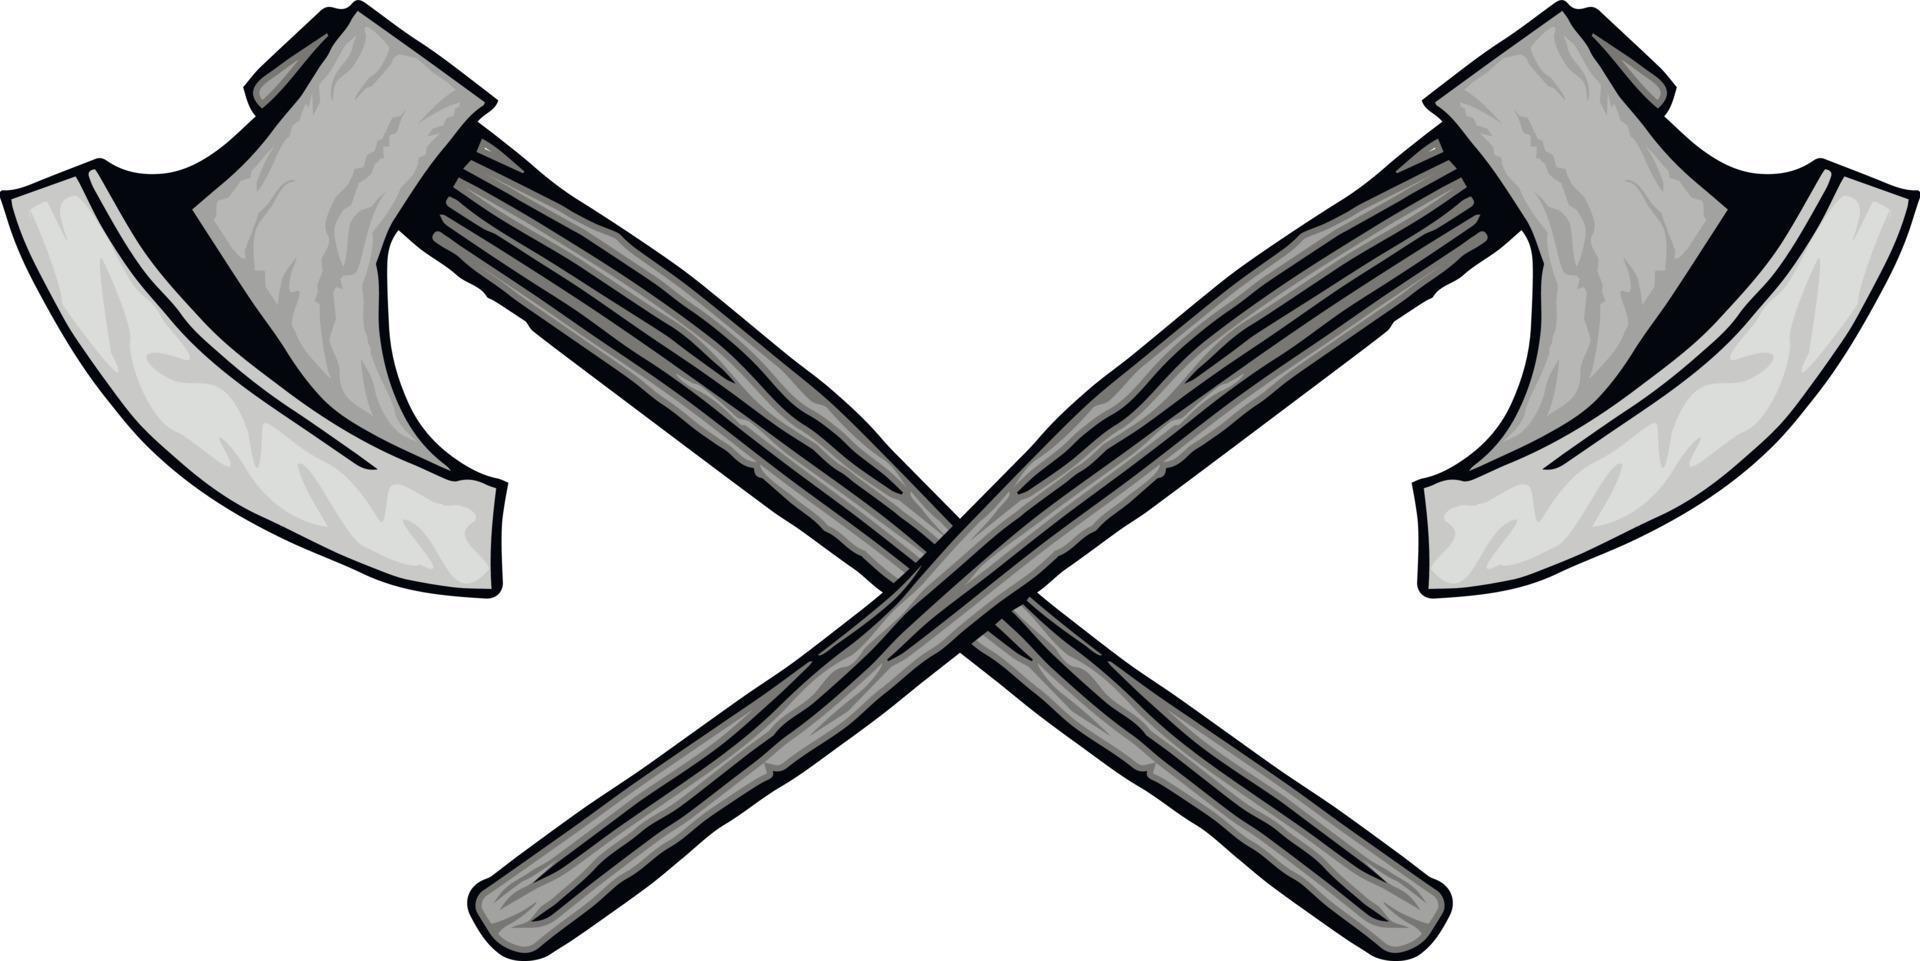 heraldic crossed swords vector